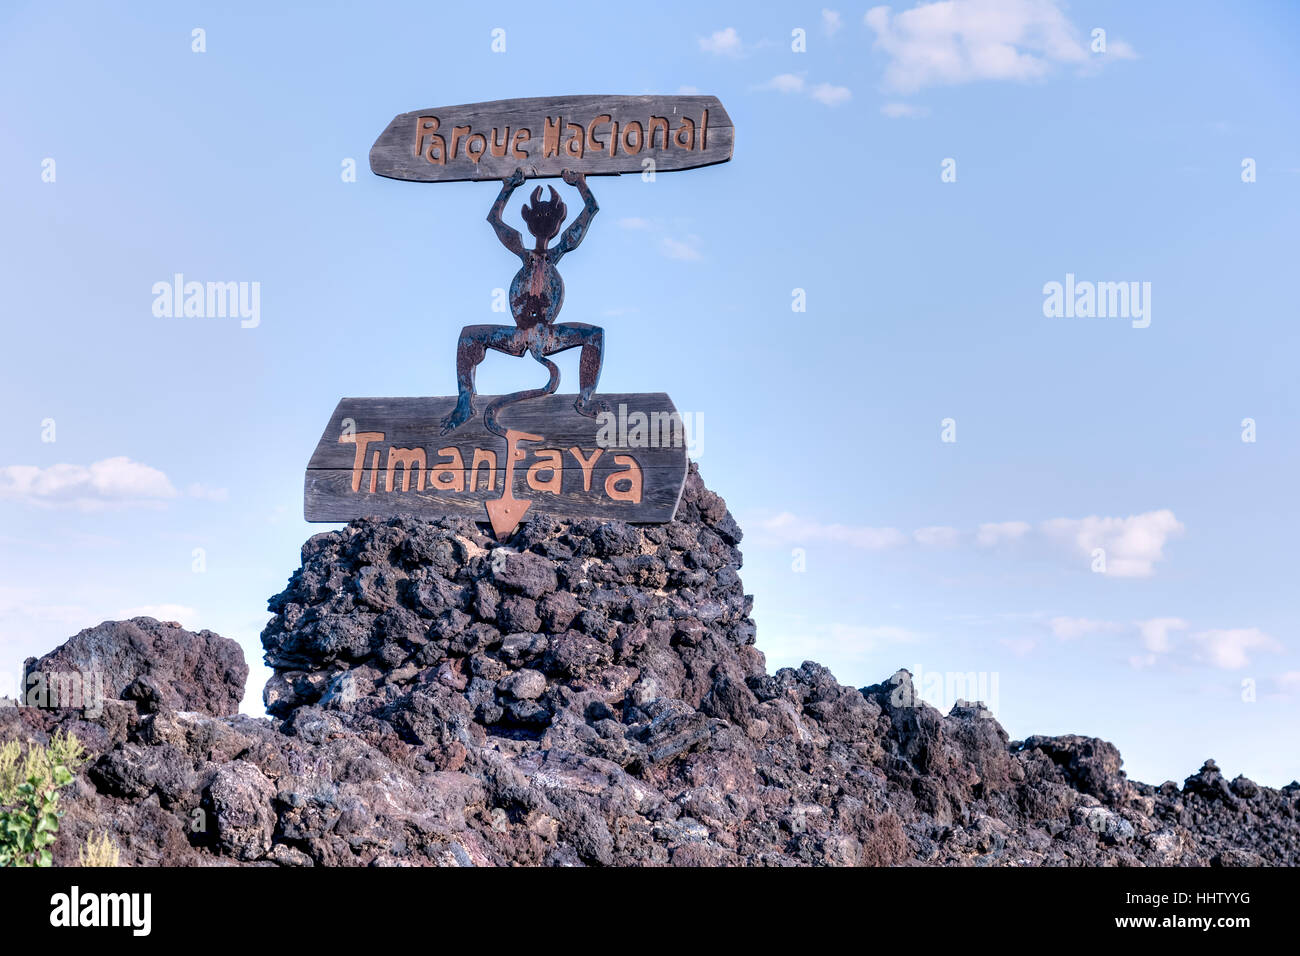 National Park Timanfaya, Montanas del Fuego, Yaiza, Lanzarote, Canary Islands, Spain Stock Photo